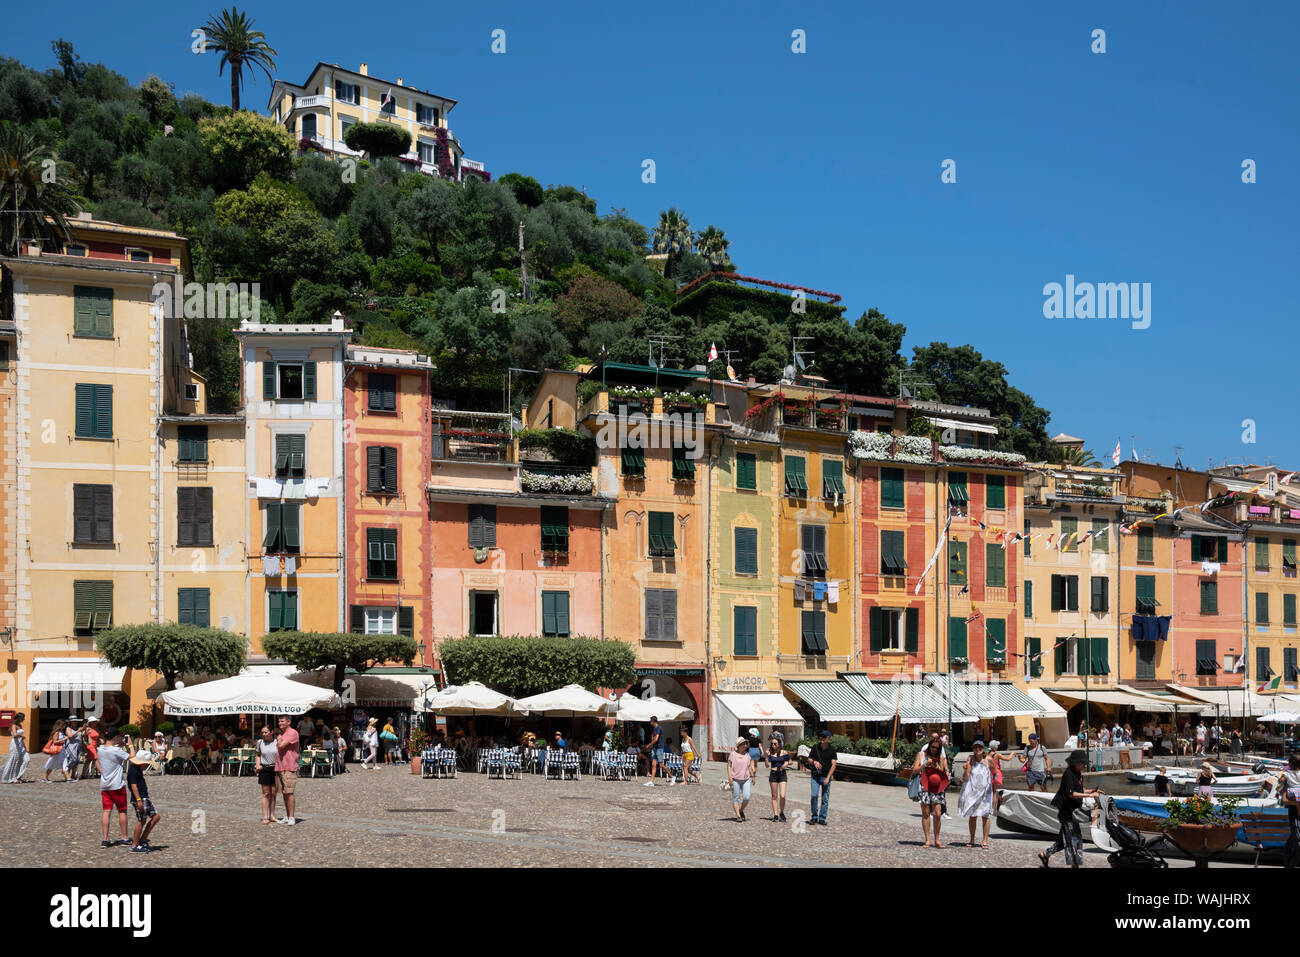 Italie, Province de Gênes, Portofino. Quartier village de pêcheurs sur la mer Ligure, bâtiments donnant sur Harbour pastel Banque D'Images